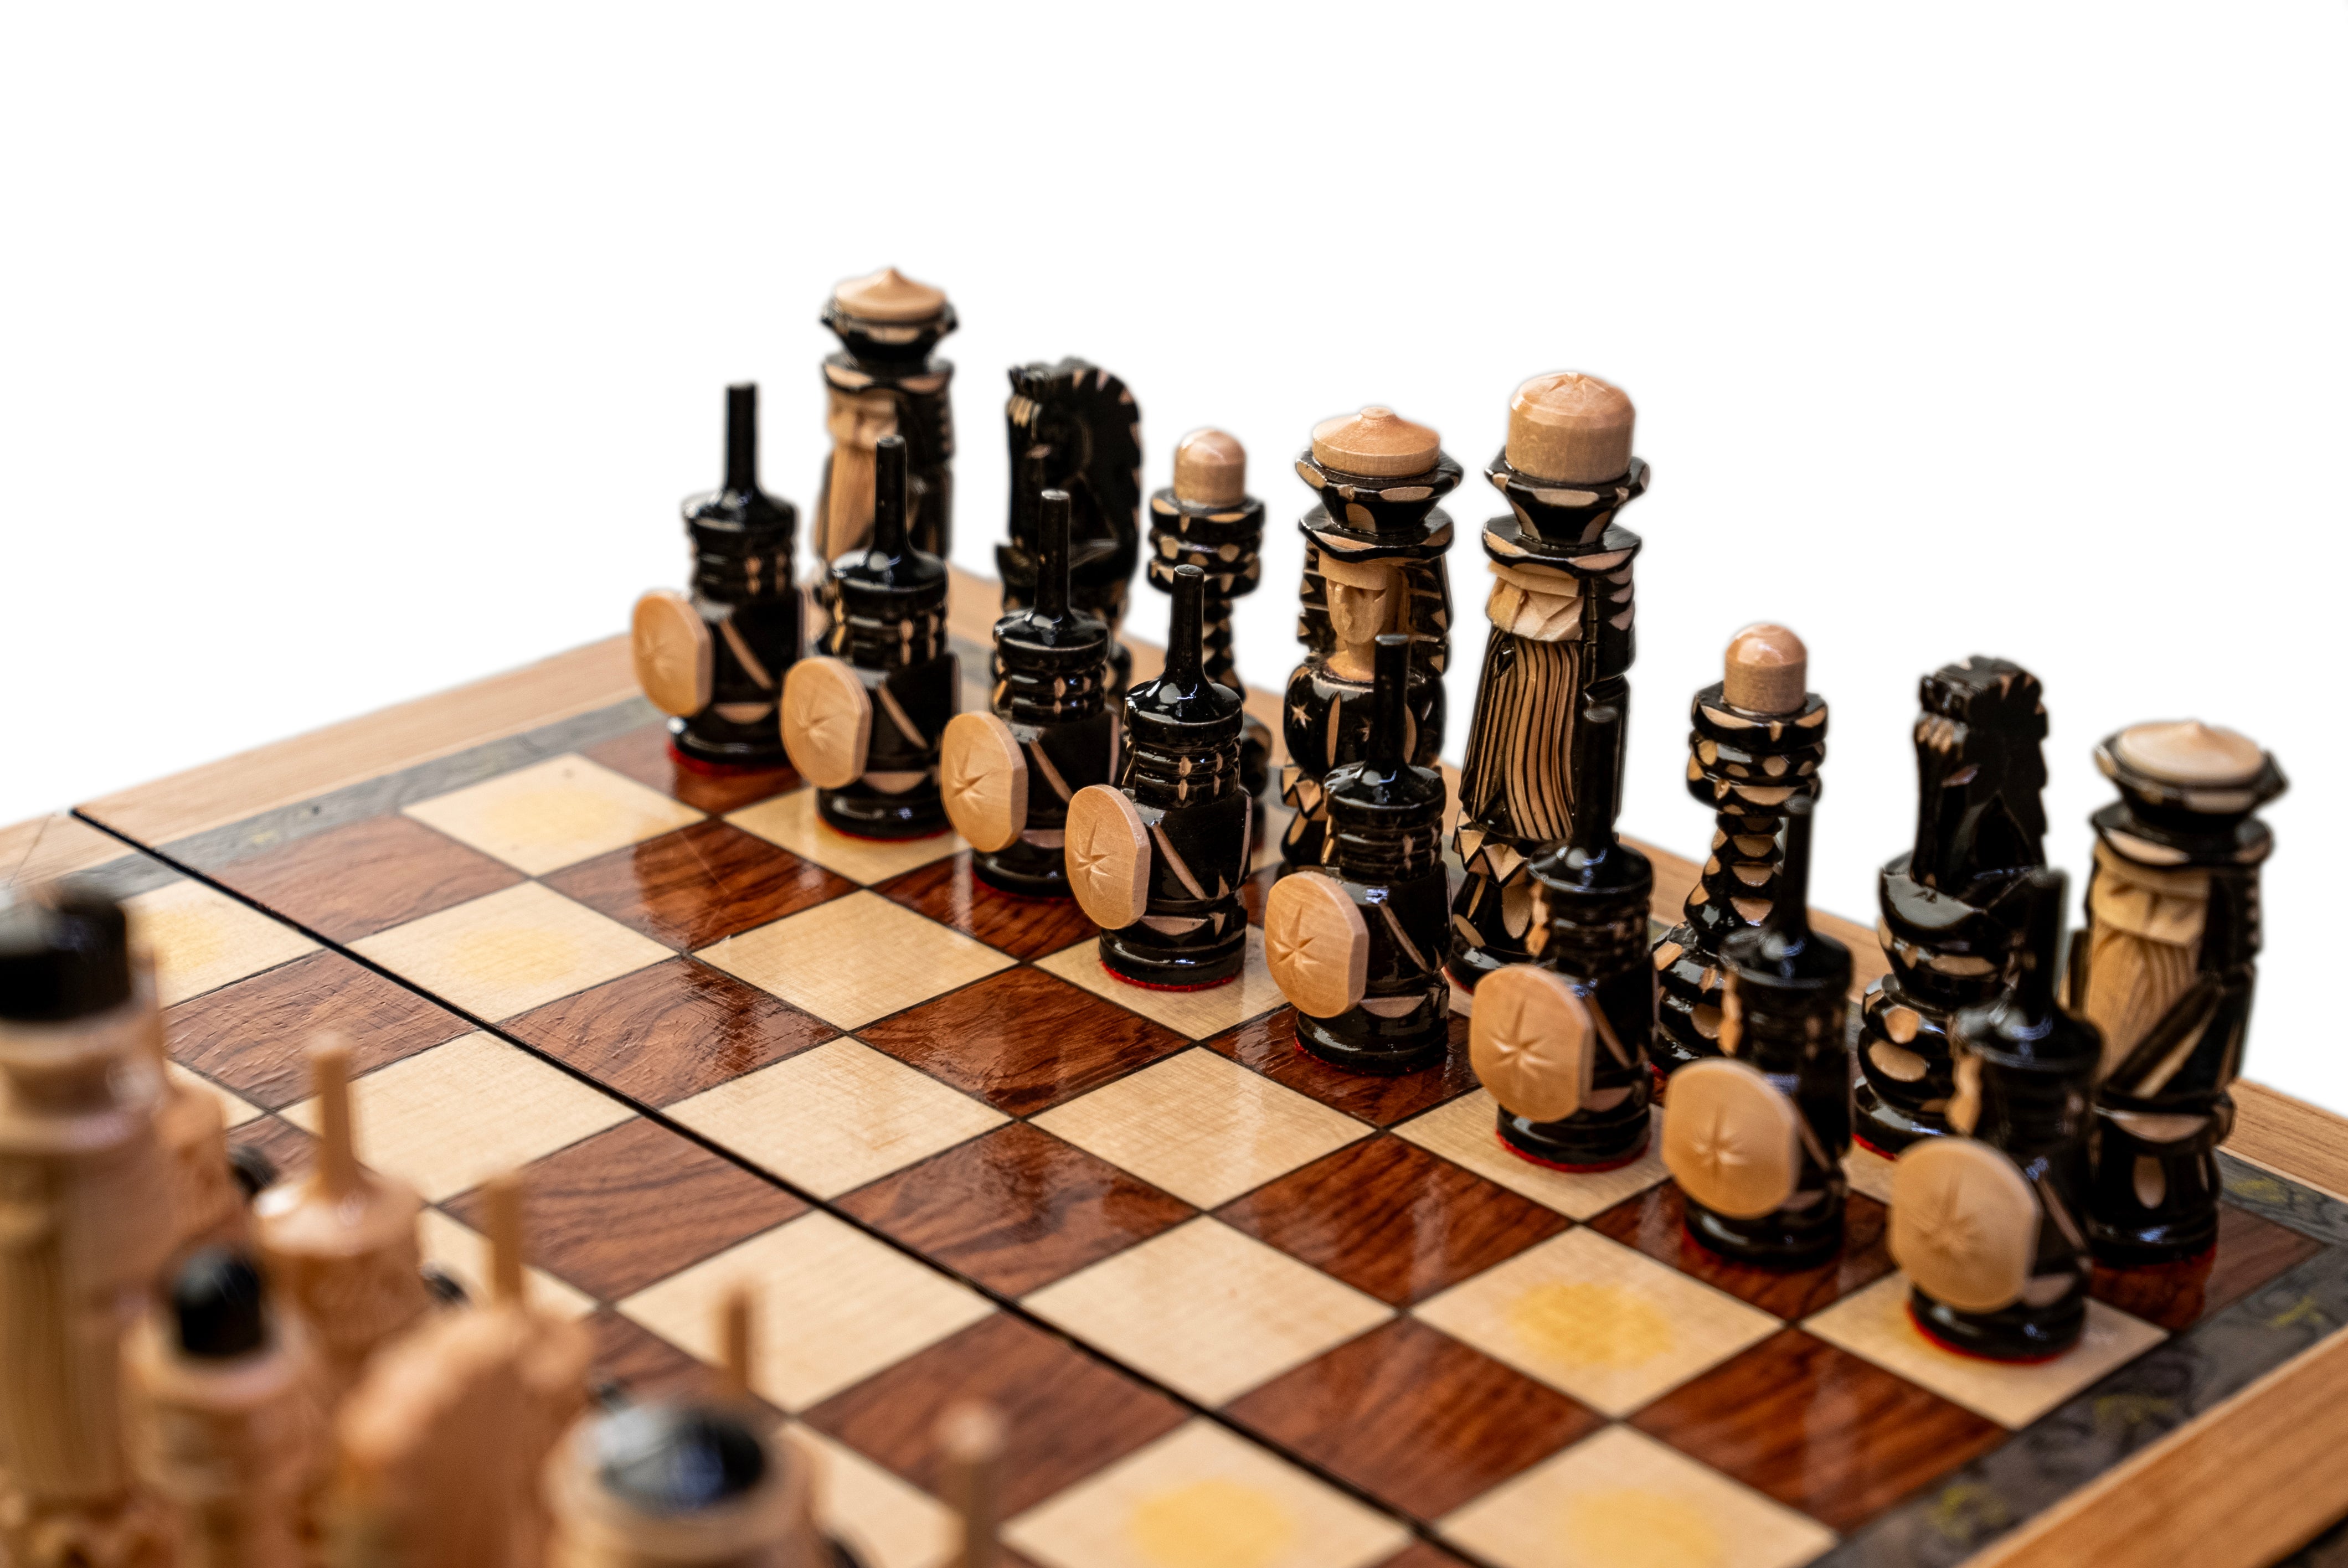 Russian Luxury Wood Chess Set